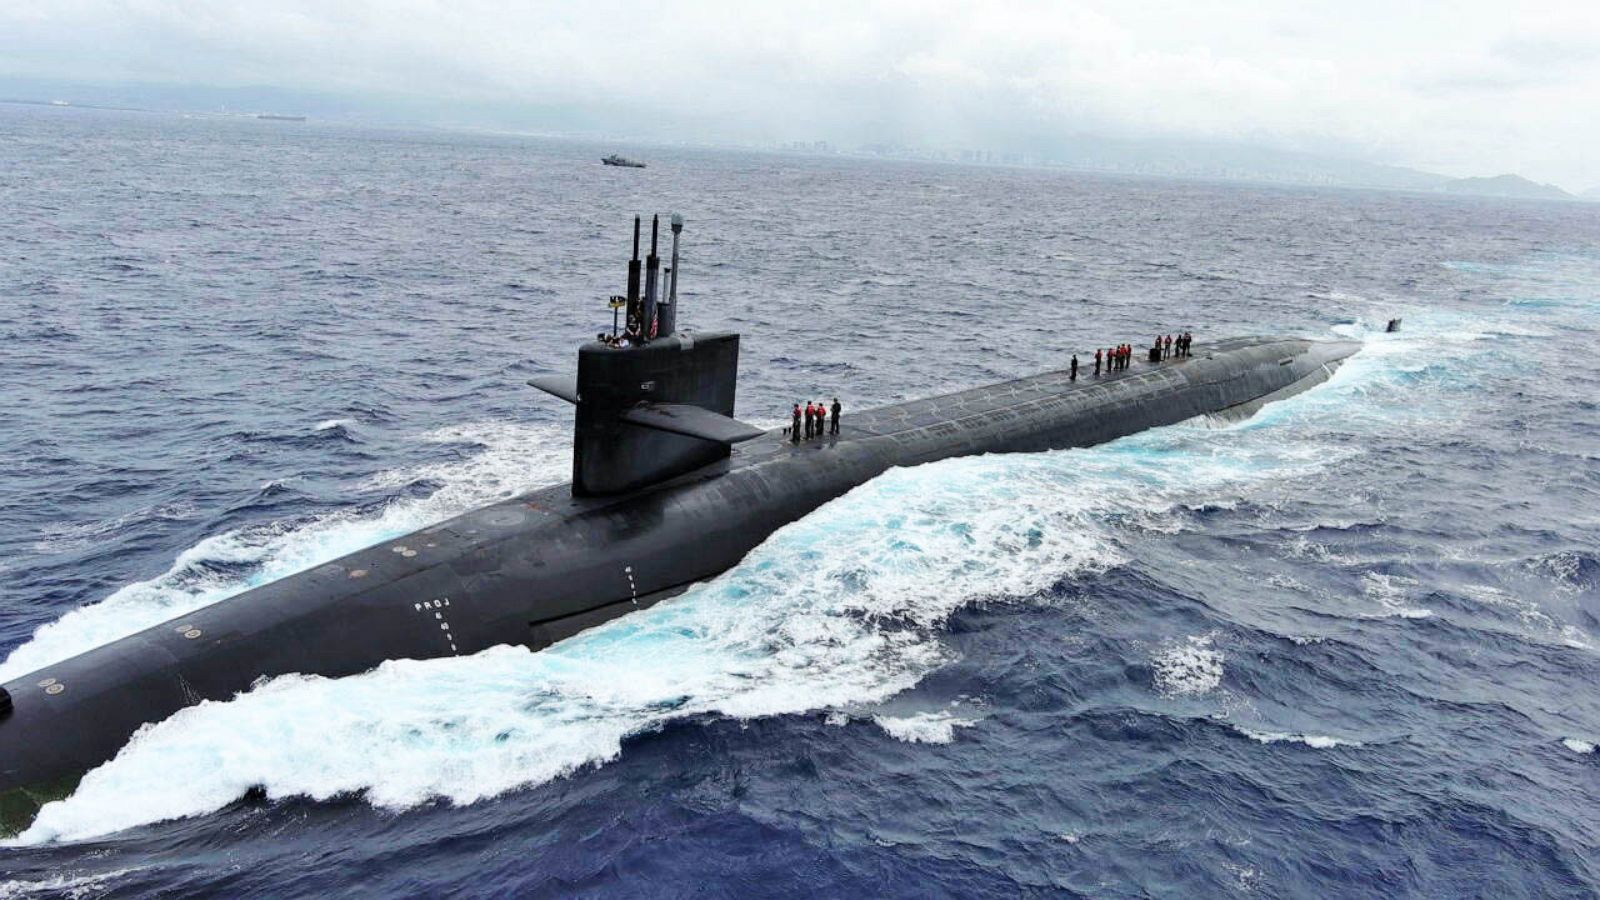 blue-submarine-no.6